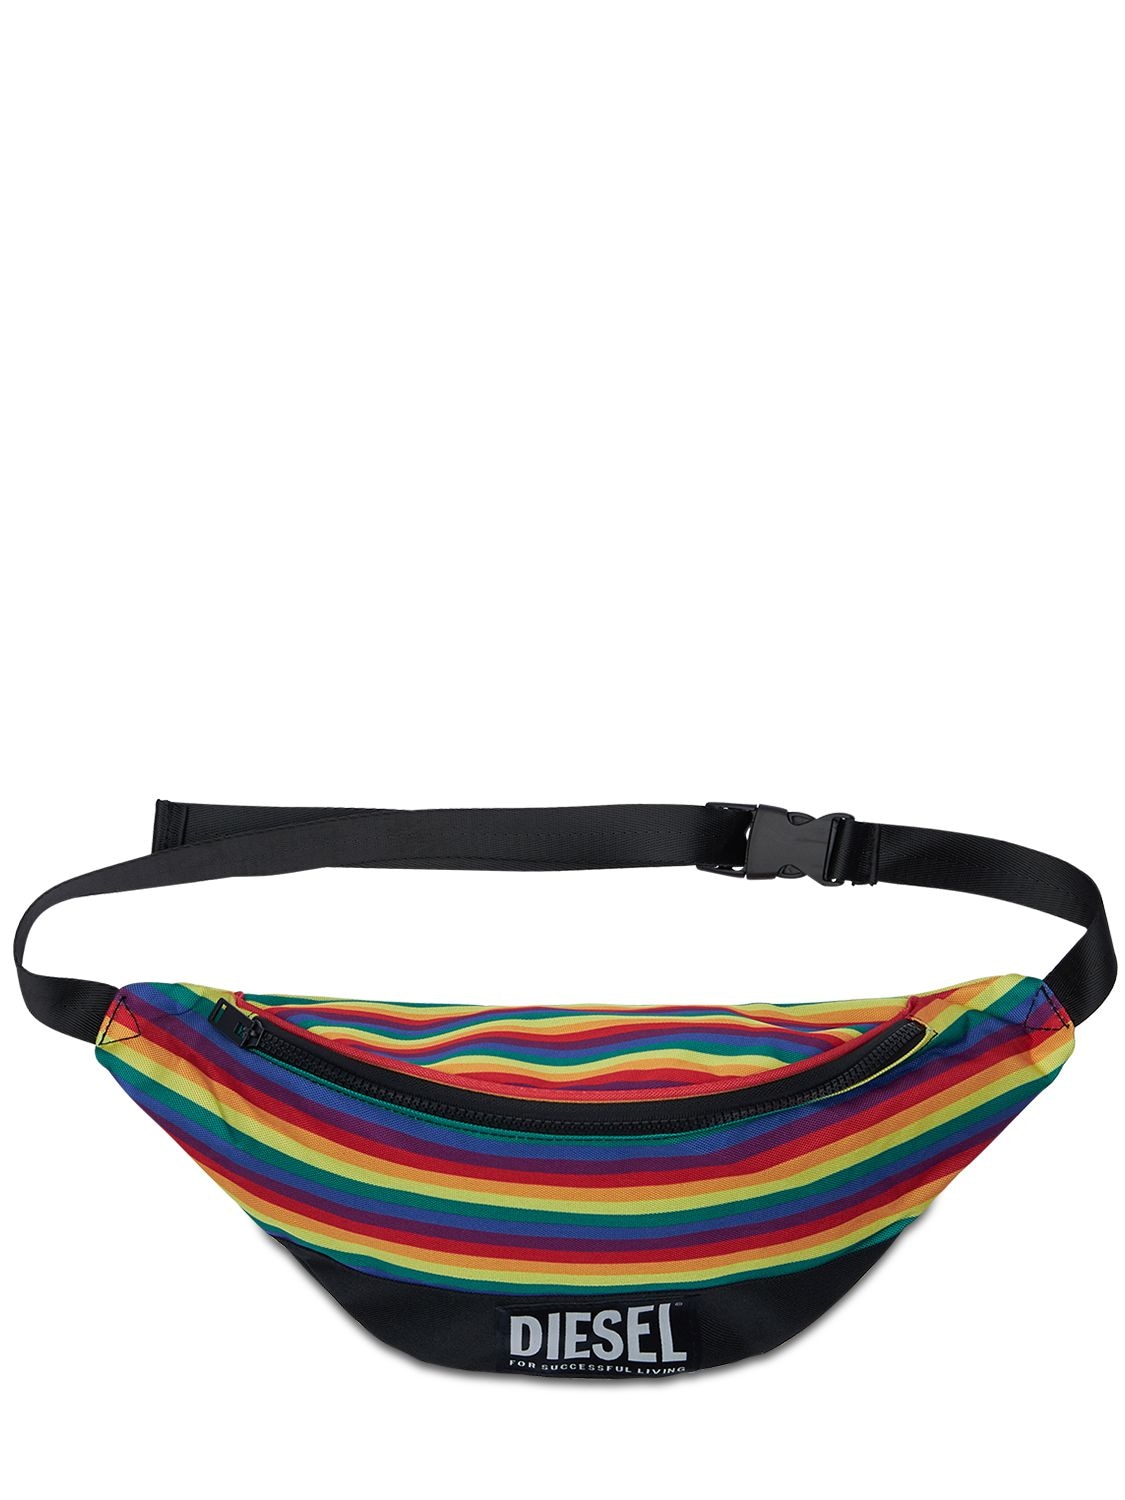 Diesel Pride Rainbow Tech Belt Bag In Black,multi